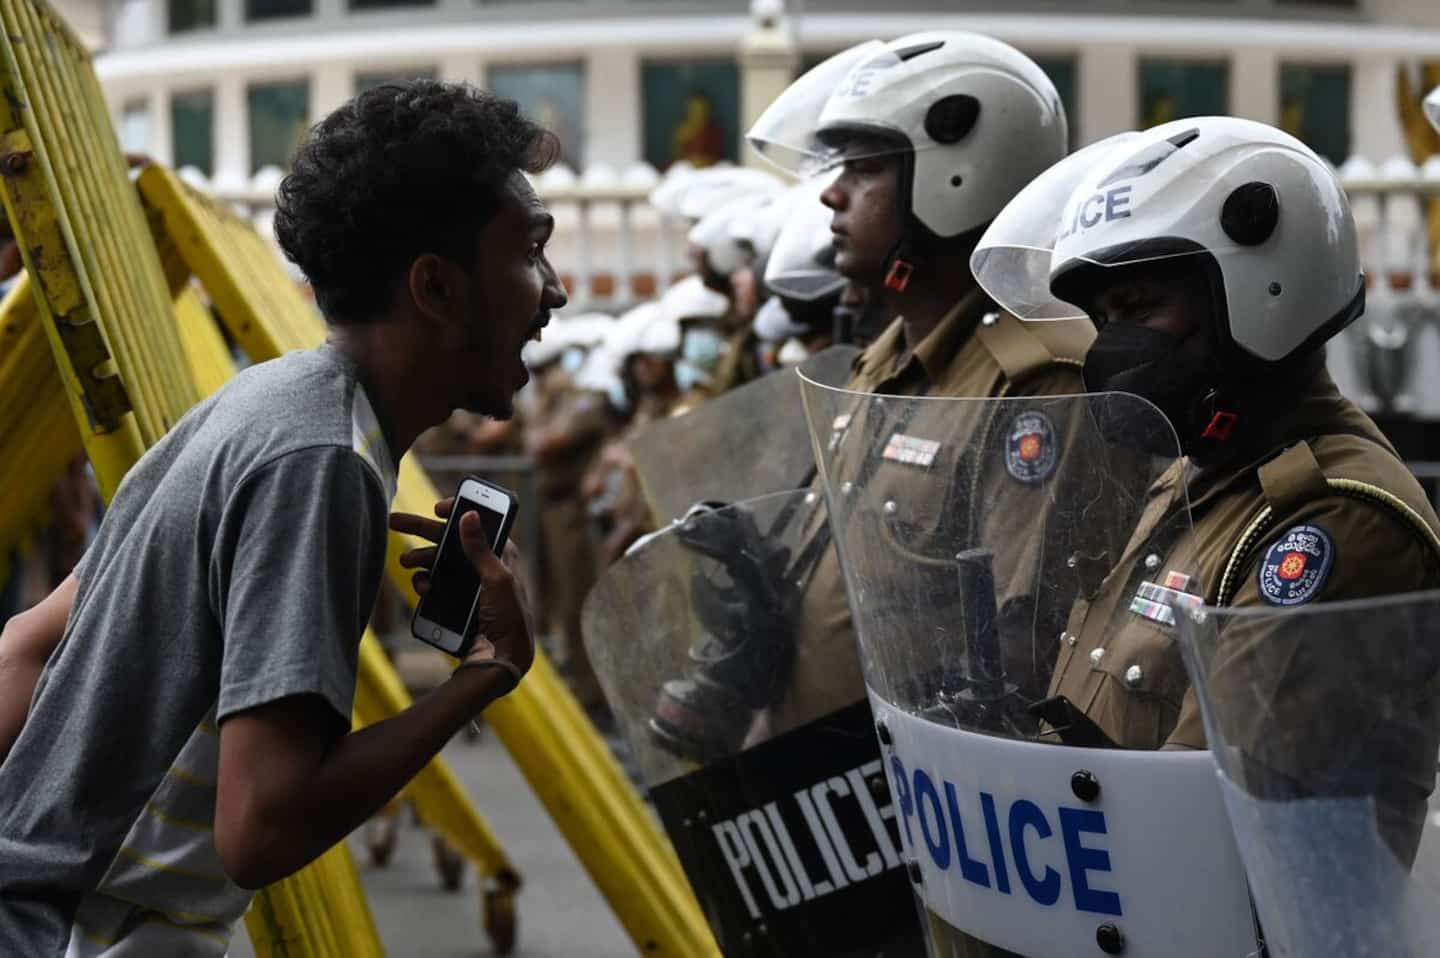 Sri Lanka: the protest camp brutally dismantled, concerns for dissent